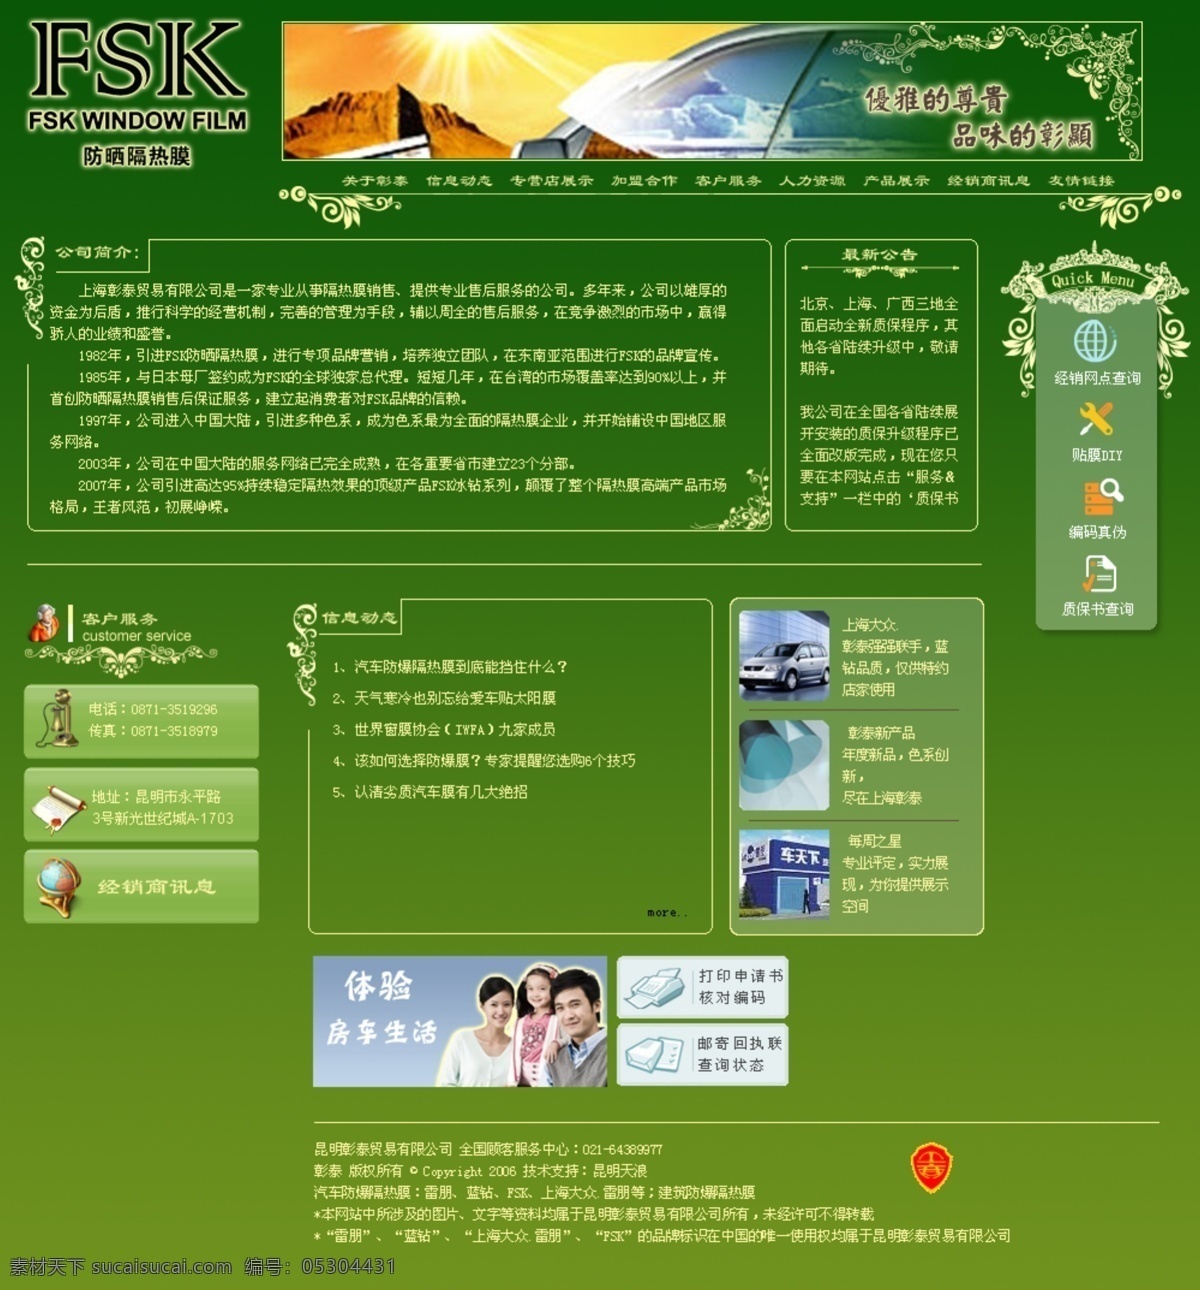 绿色 欧式风格 网页模板 源文件 中文模版 欧式 网站 模板 模板下载 ksk 家居装饰素材